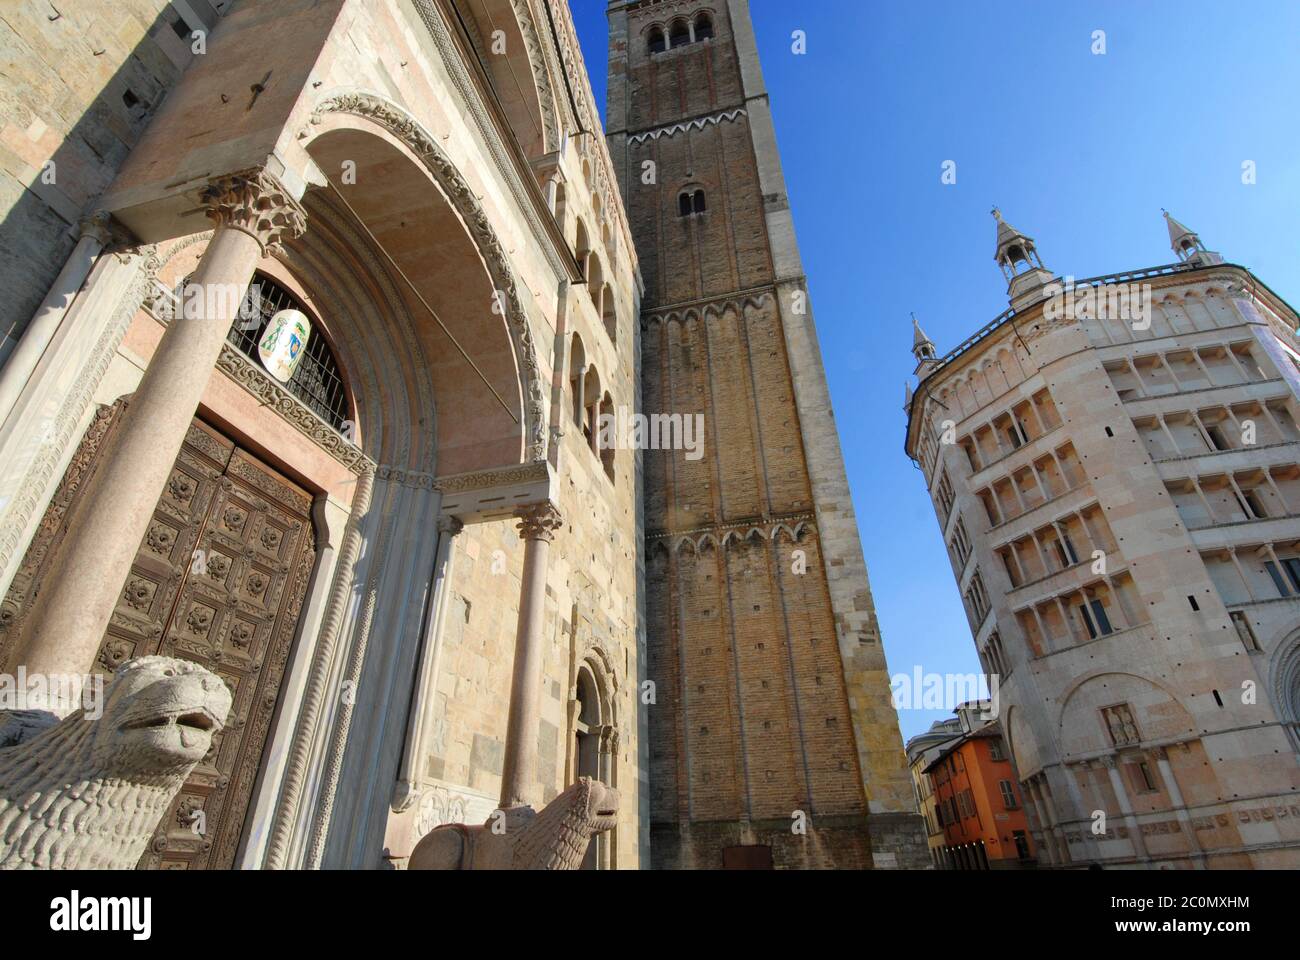 Parma ist die italienische Kulturhauptstadt 2020. Das Taufbecken von Parma befindet sich neben der Kathedrale von Parma, Symbole der romanischen gotischen Architektur Stockfoto